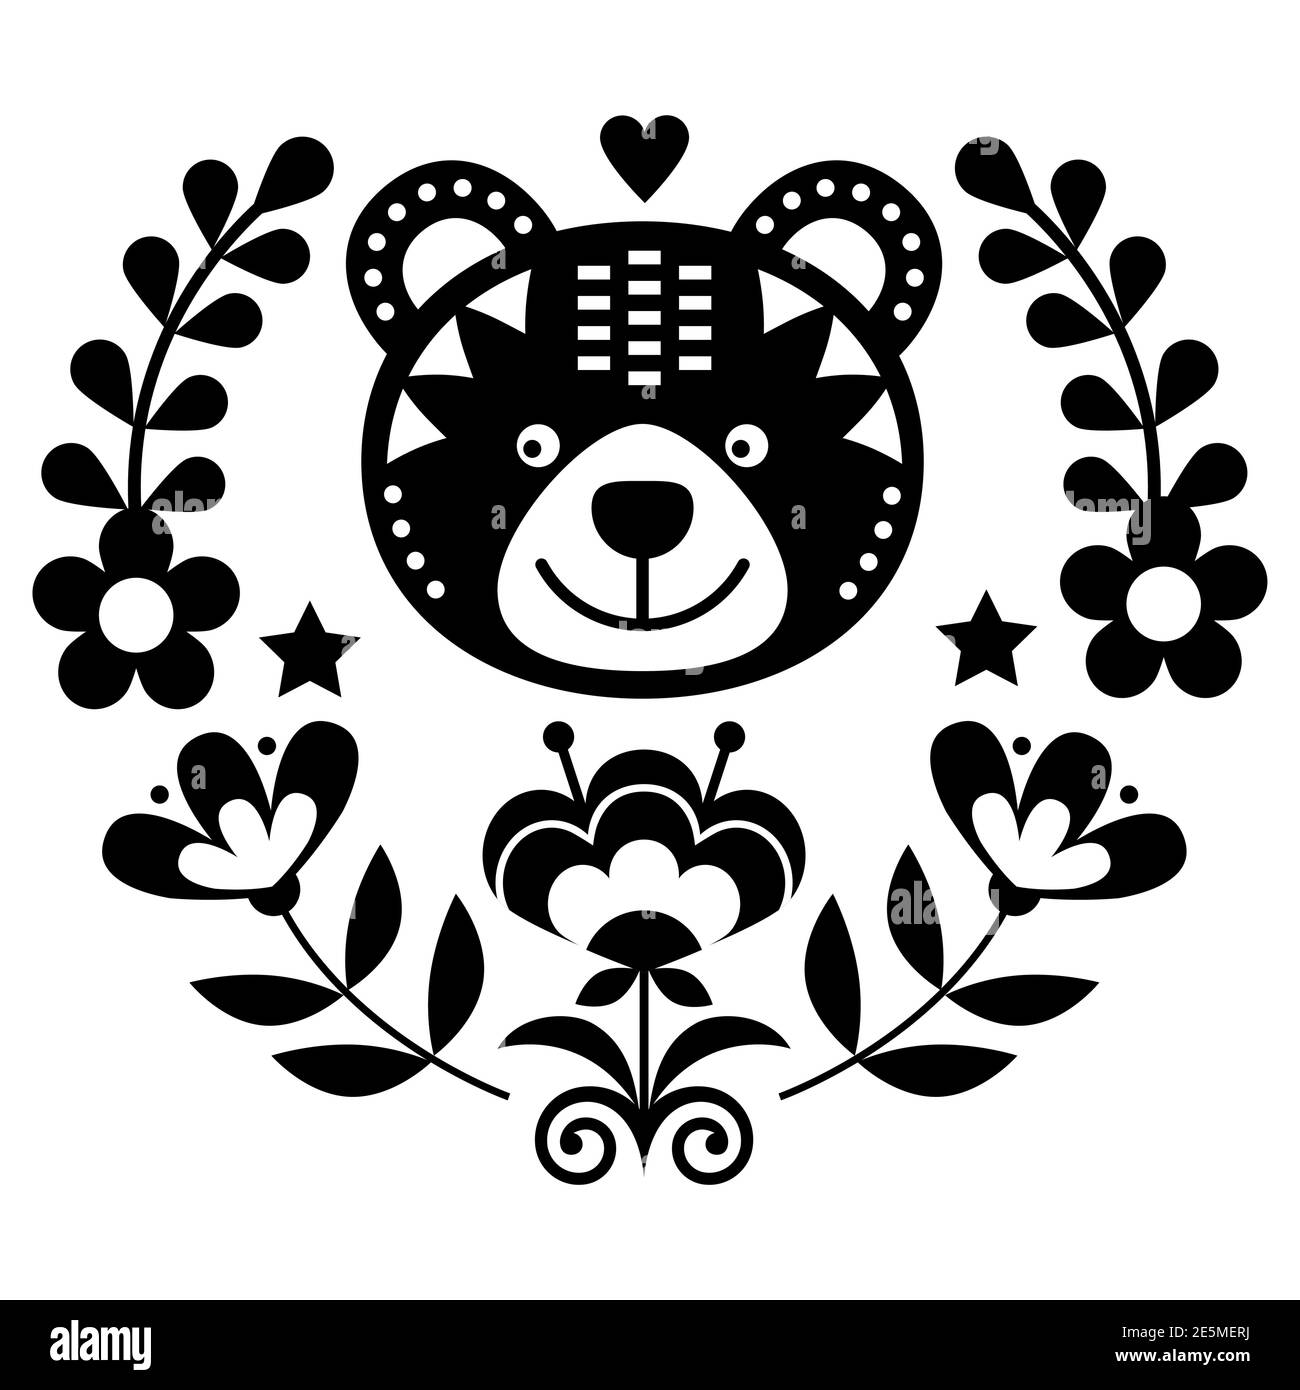 Skandinavische Bär Volkskunst Vektor rundes Muster mit Blumen und Kranz, nordische Blumen schwarz und weiß Grußkarte oder Einladung von traditi inspiriert Stock Vektor